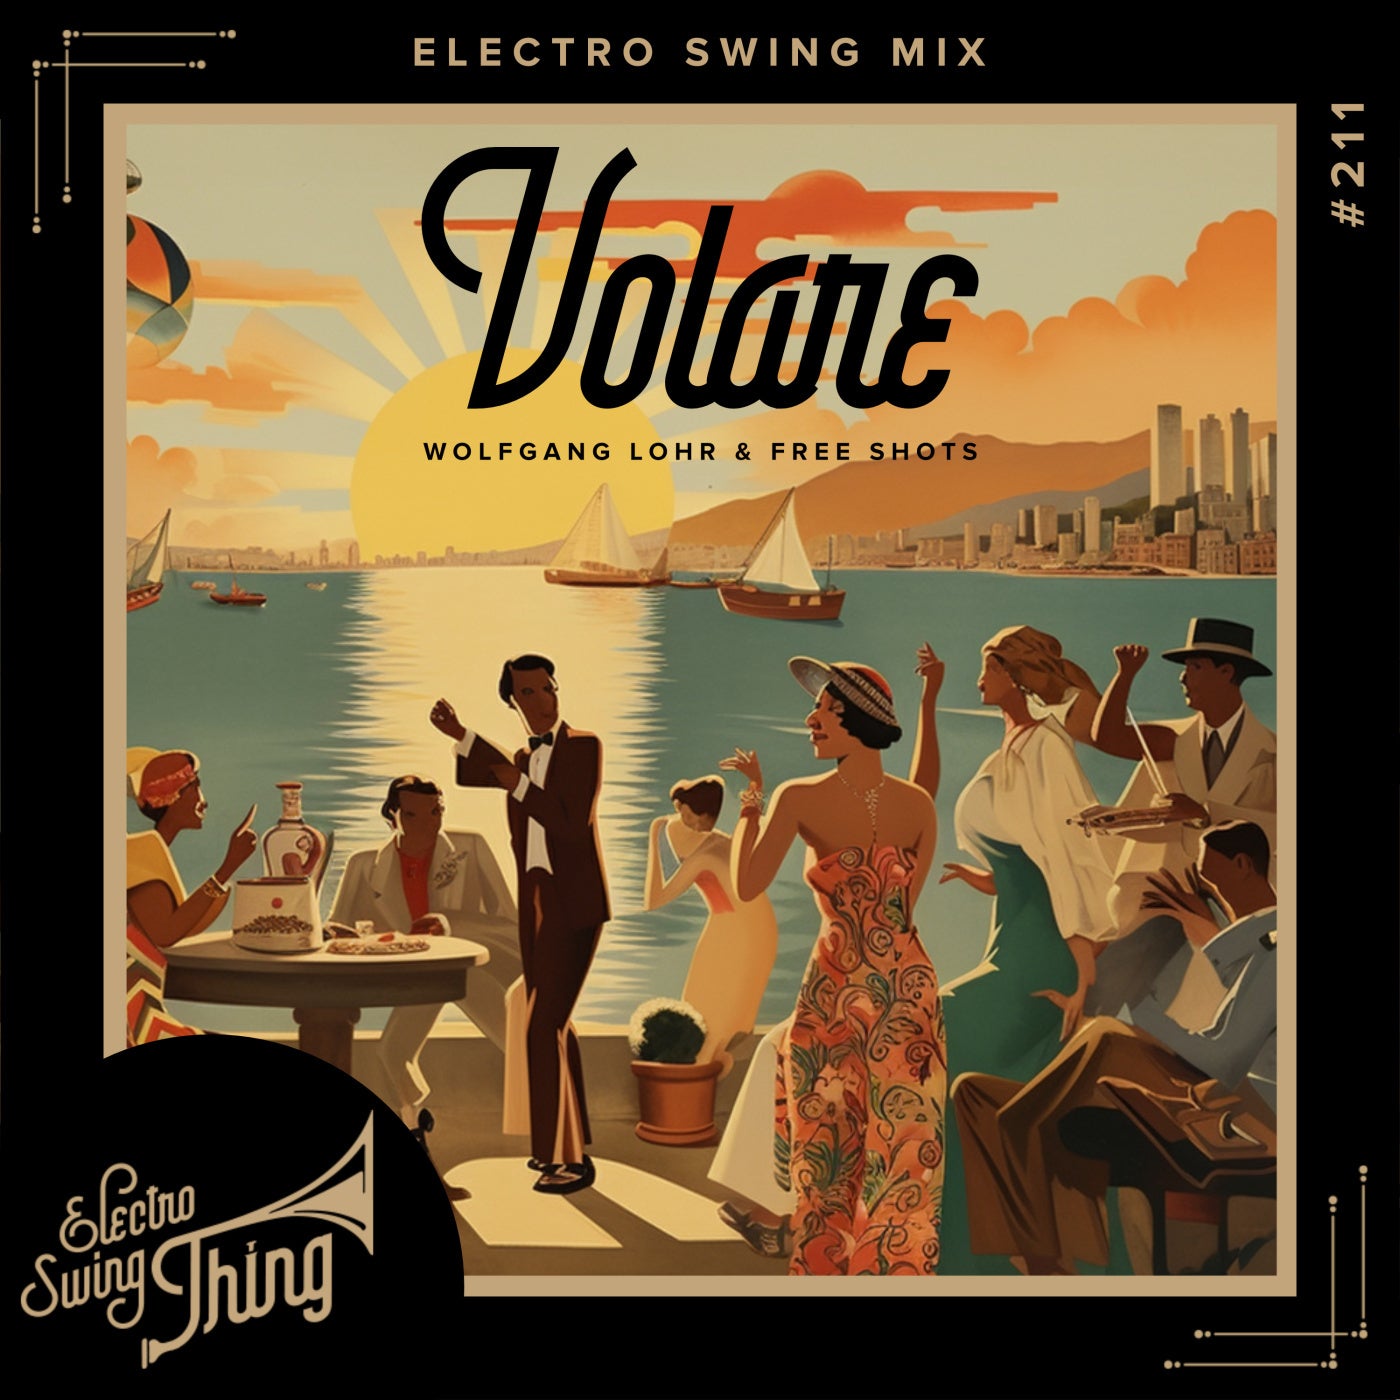 Volare (Electro Swing Mix)